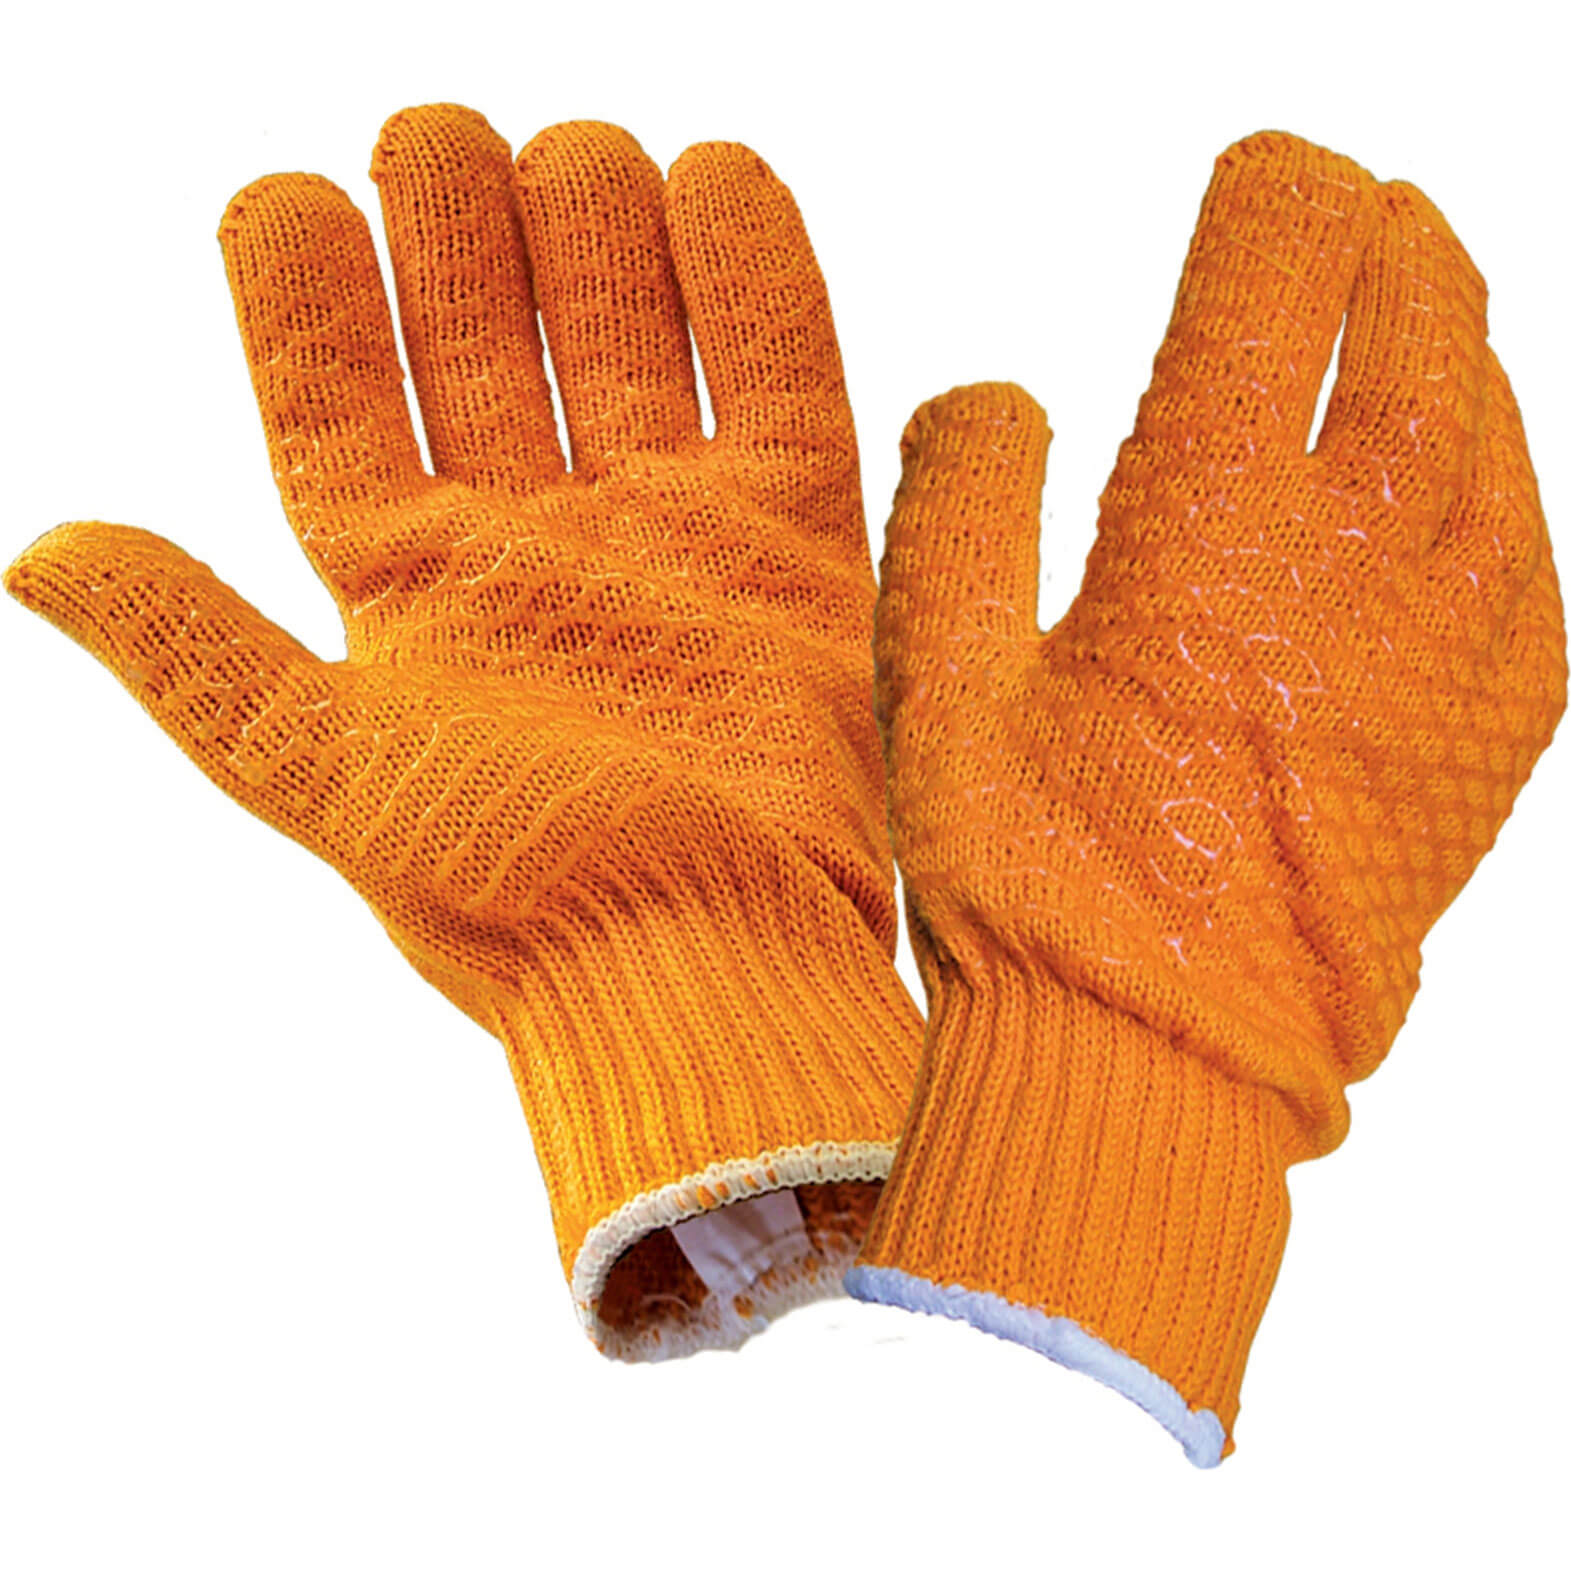 Photos - Safety Equipment SCAN Gripper Glove Orange One Size SCAGLOGG 